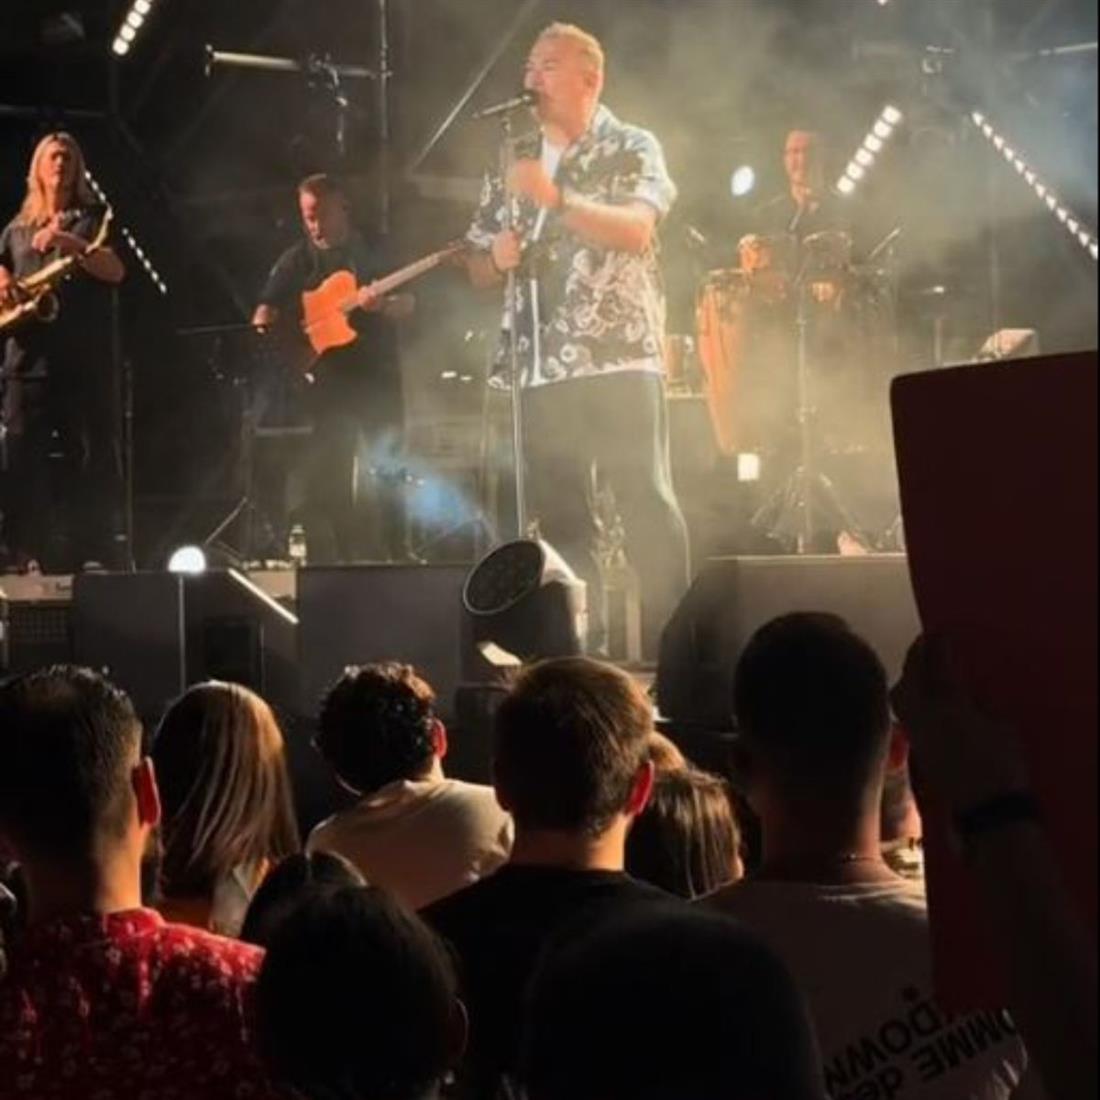 Αντώνης Ρέμος: Το μήνυμα στην πρώτη συναυλία μετά τις κατηγορίες για φοροδιαφυγή - "Απόψε είμαι όρθιος"
